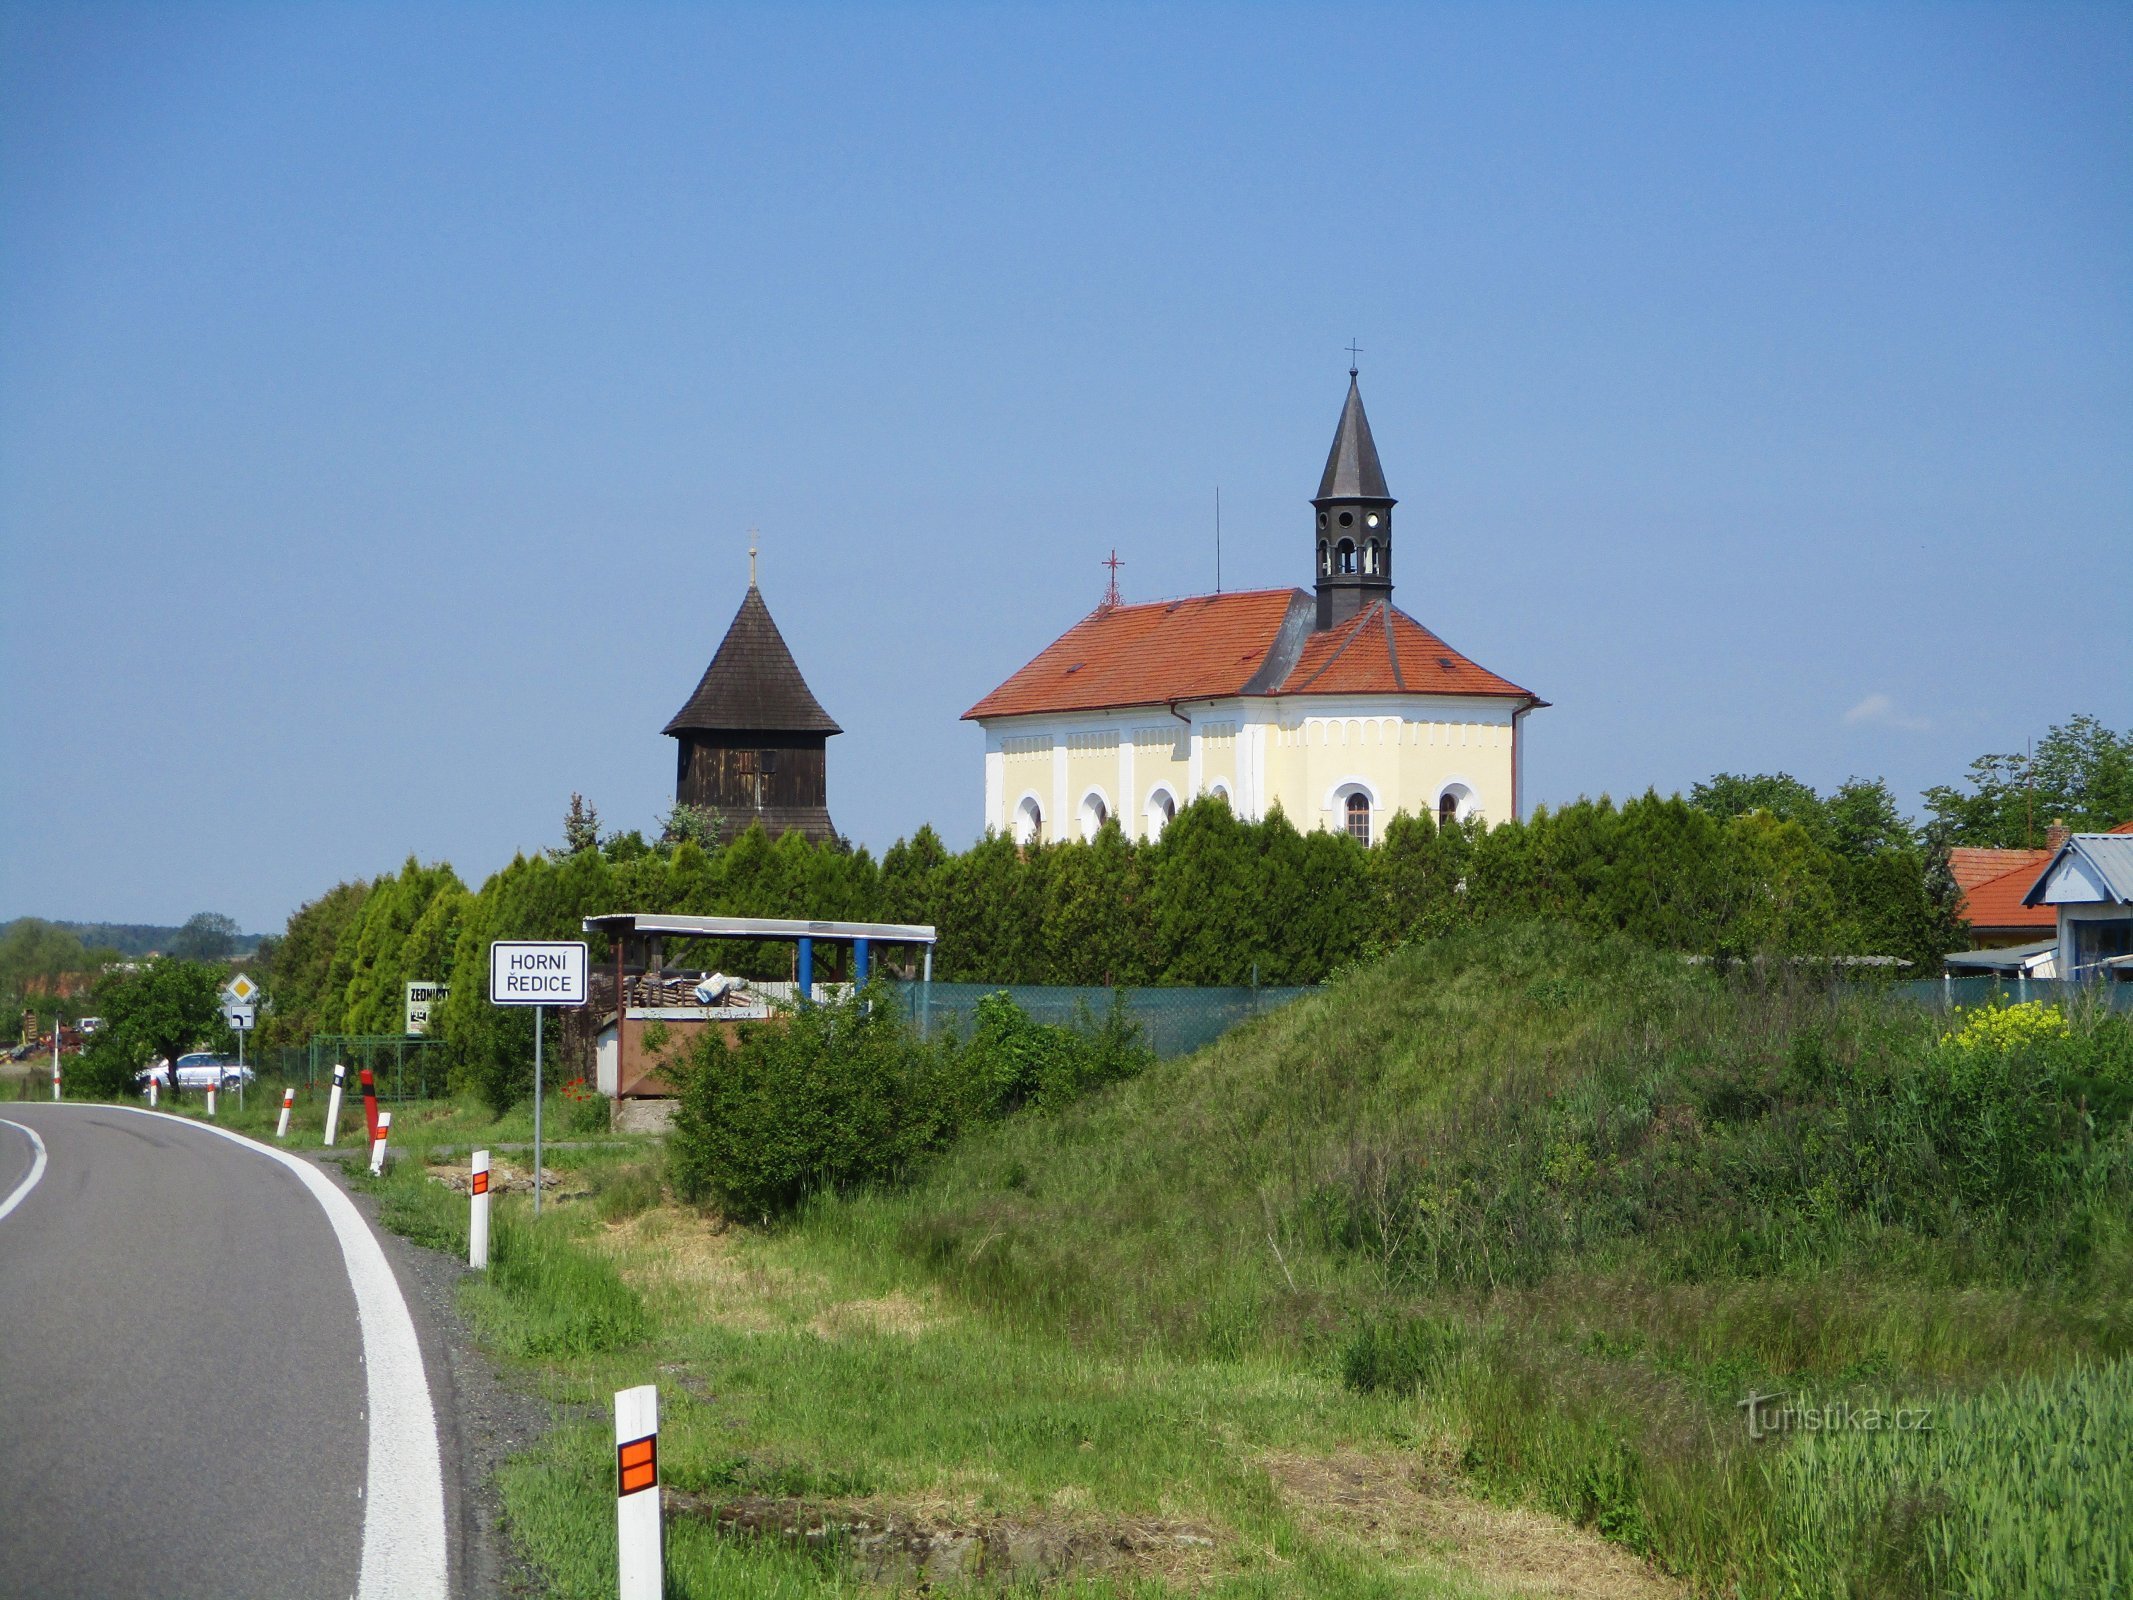 Kerk van St. Wenceslas met de klokkentoren (Horní Ředice, 16.5.2020/XNUMX/XNUMX)